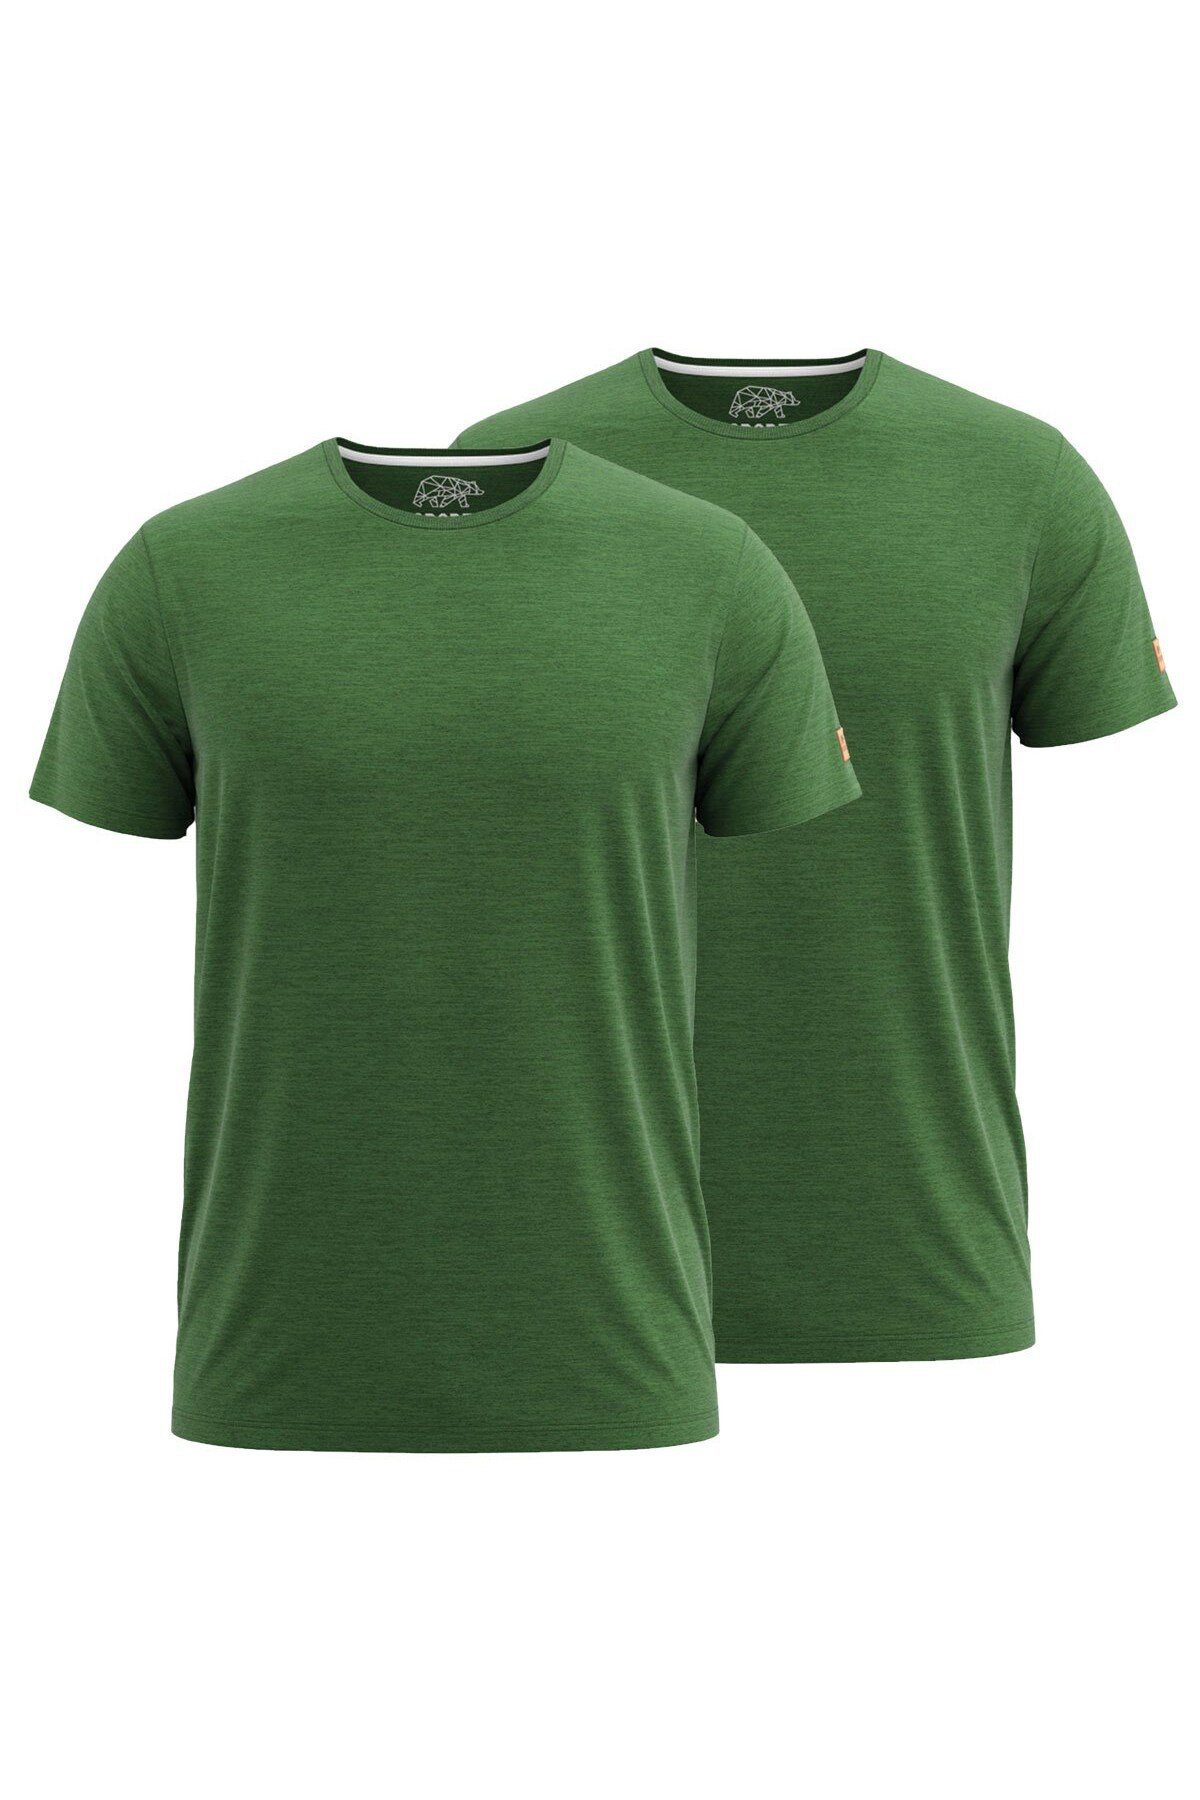 FORSBERG T-Shirt T-Shirt 1/2 Doppelpack grün